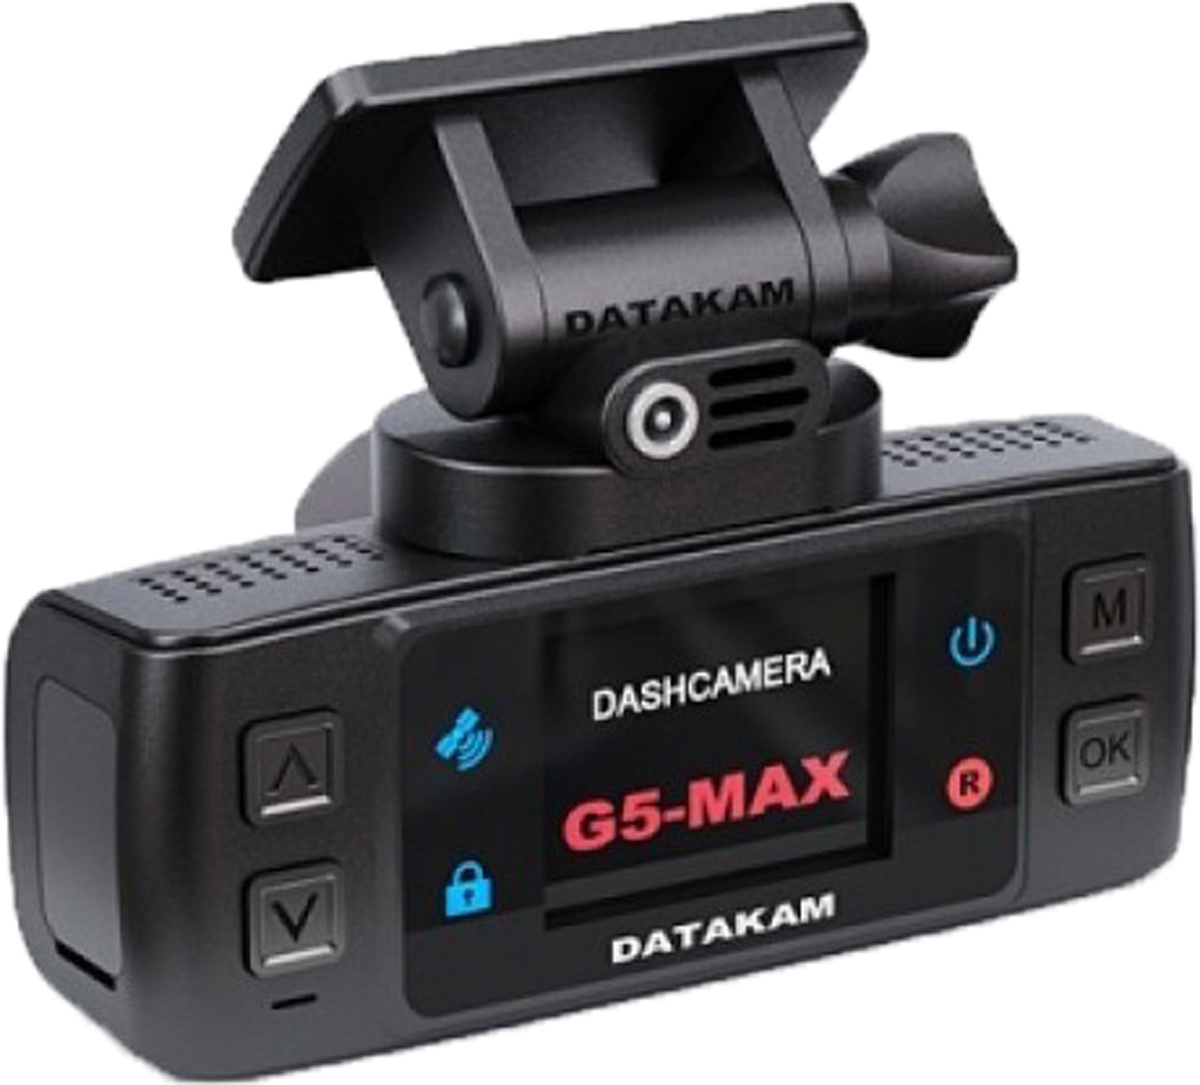 Лучшие недорогие регистраторы. DATAKAM Duo Pro. DATAKAM g5 real. DATAKAM g5 real bf. Видеорегистратор DATAKAM g5 real Max, GPS, ГЛОНАСС.